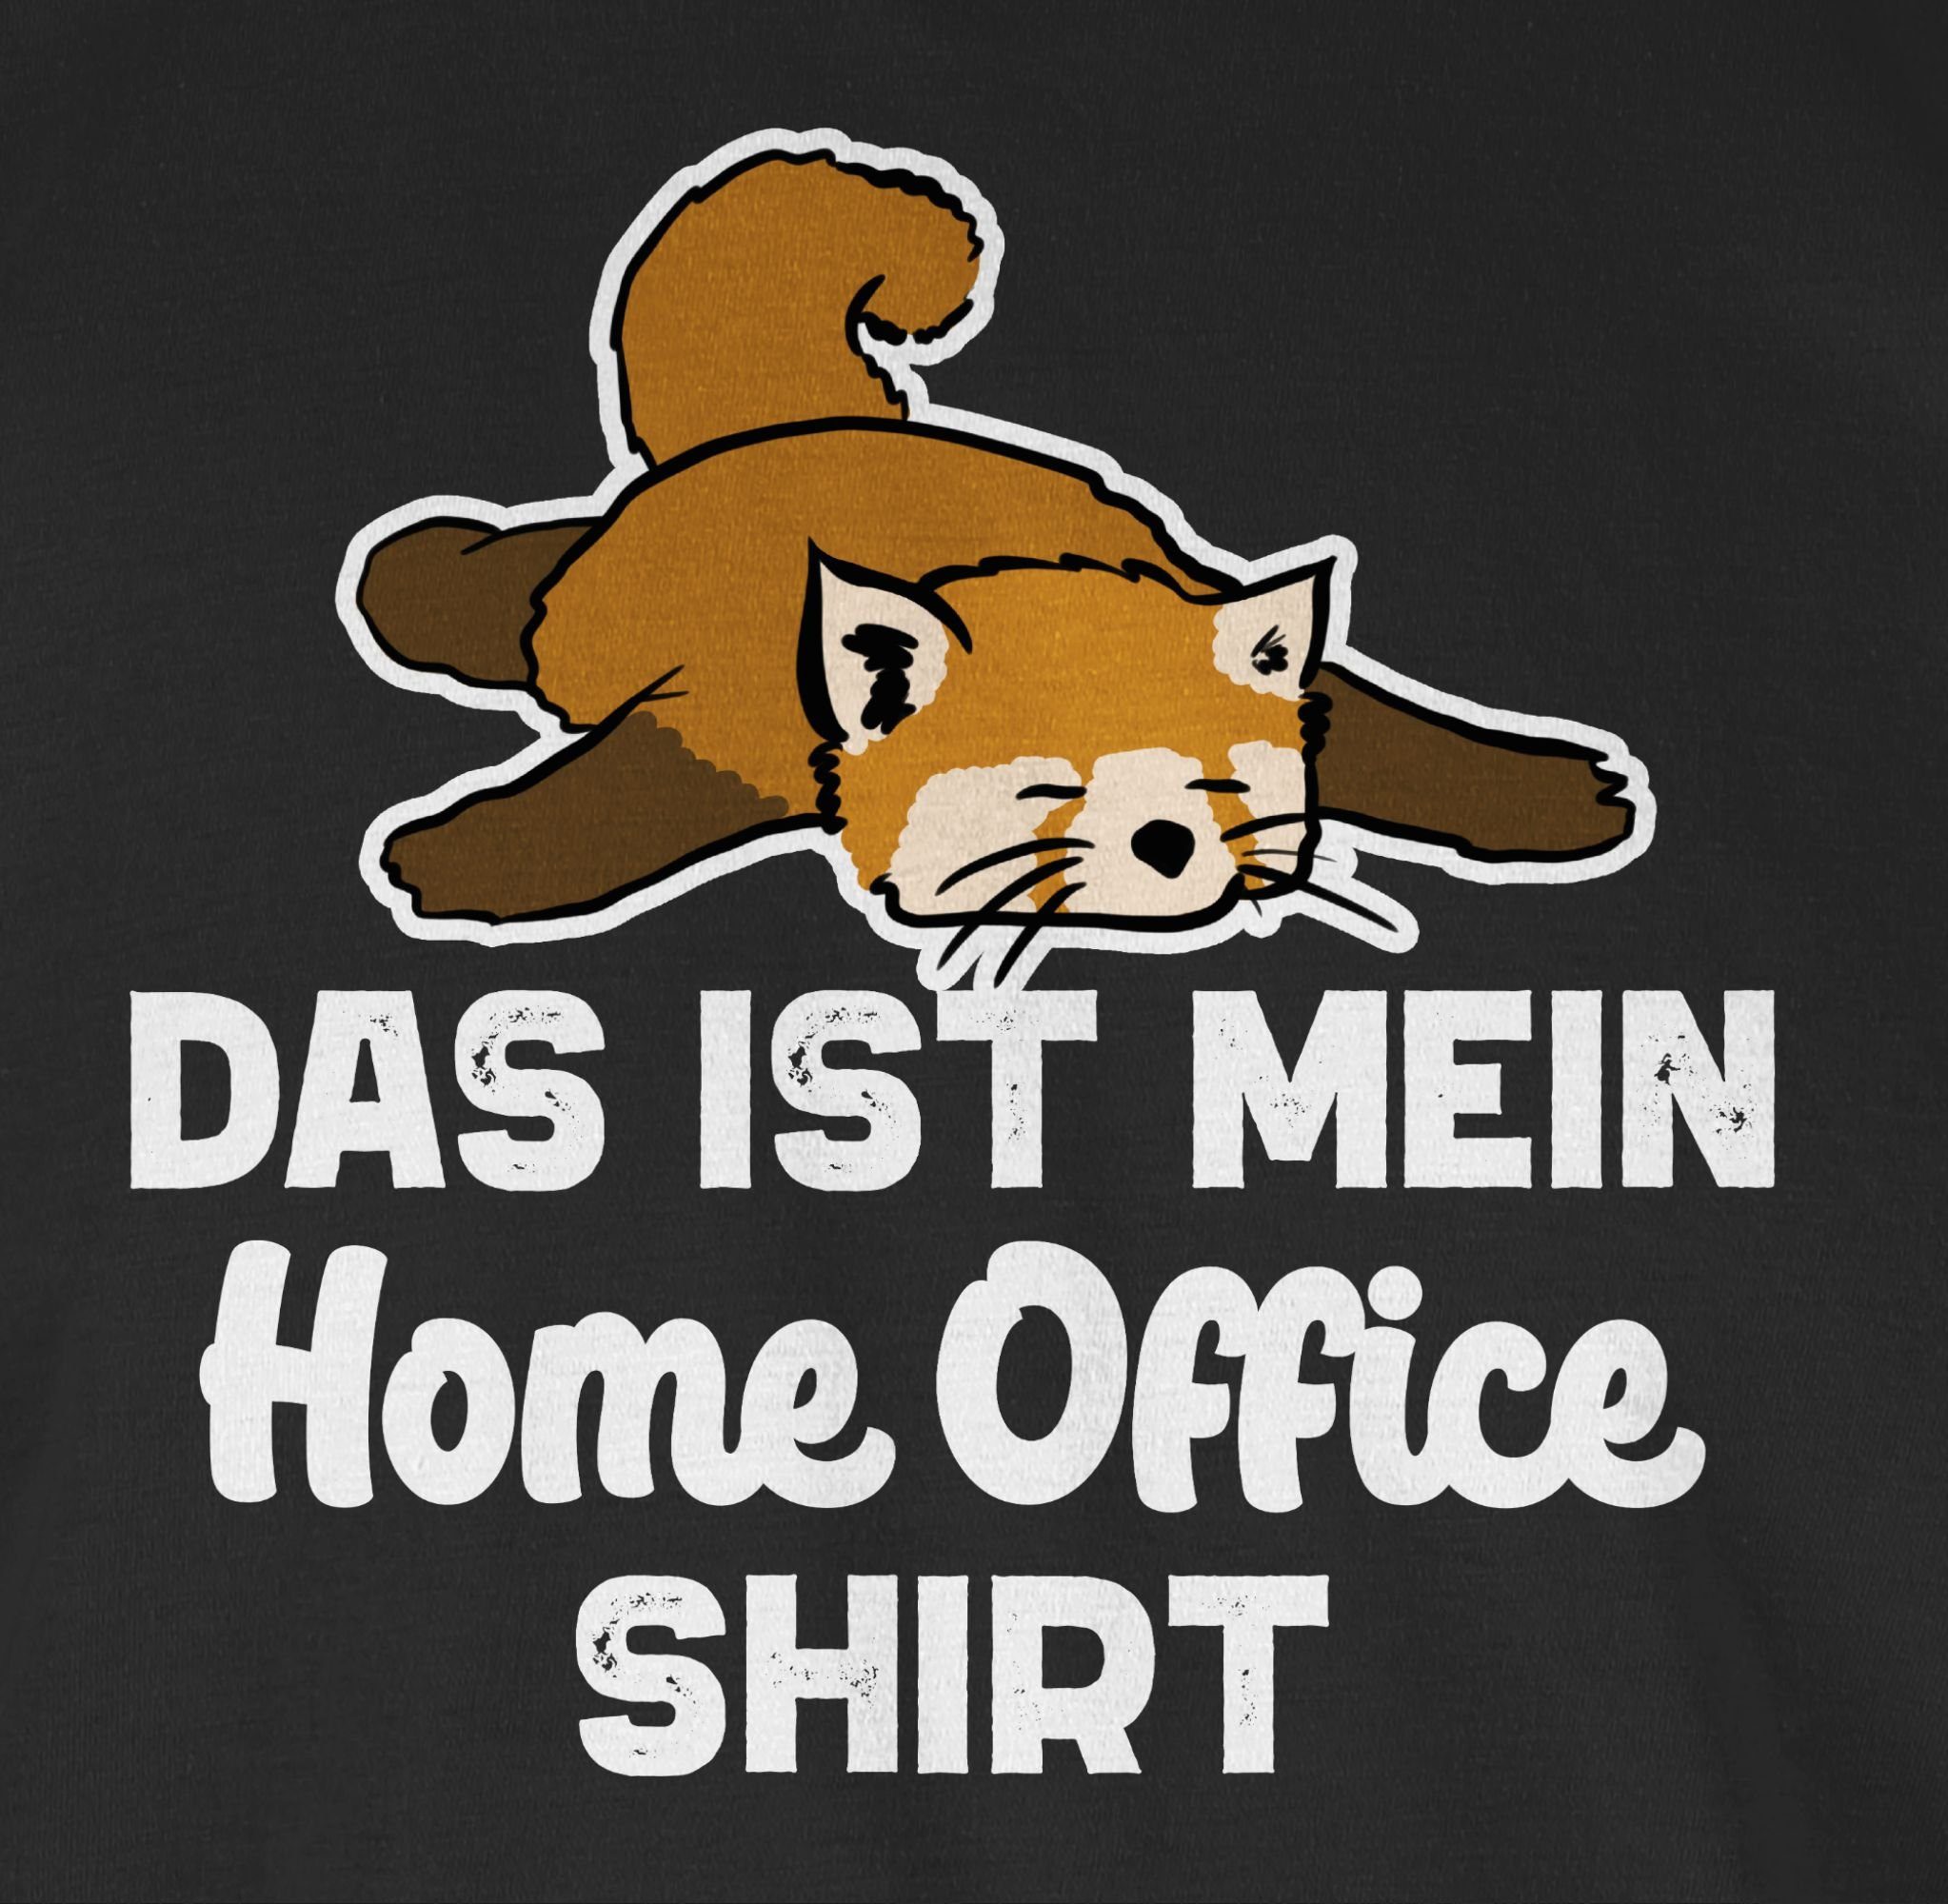 Schwarz Geschenke T-Shirt und Fuchs Das Office Beruf mit 01 Shirt Job Shirtracer Home ist mein